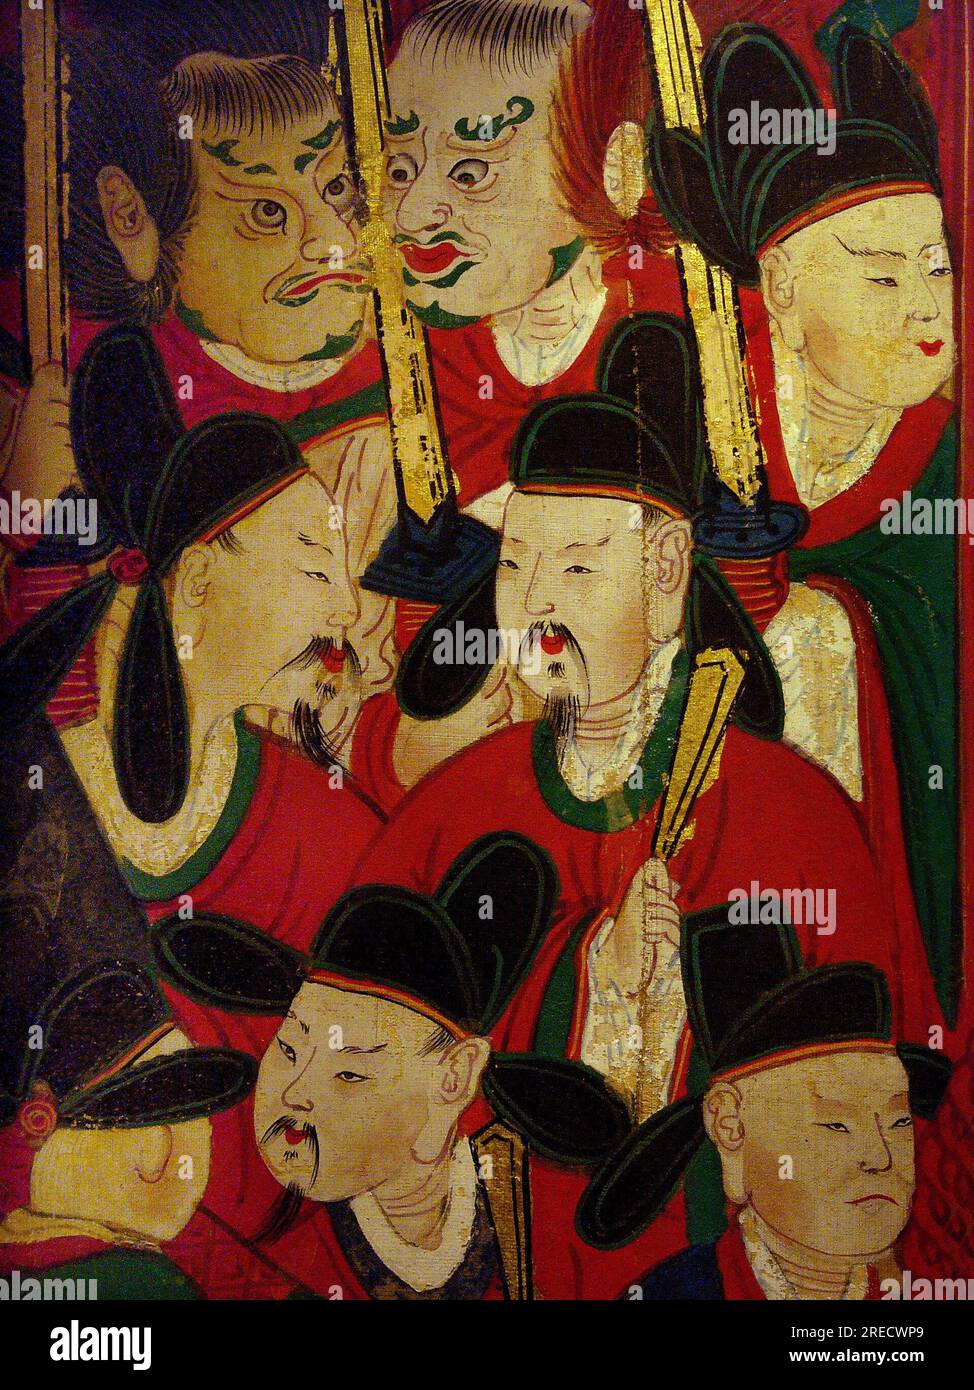 Detail du portrait du Sixieme Roi (Danjong, 1441-1457) - peinture sur soie, XIXe siecle sous la periode Joseon, Taegosa, Coree. Photographie, Musee National de Seoul, Republique de Coree Stock Photo